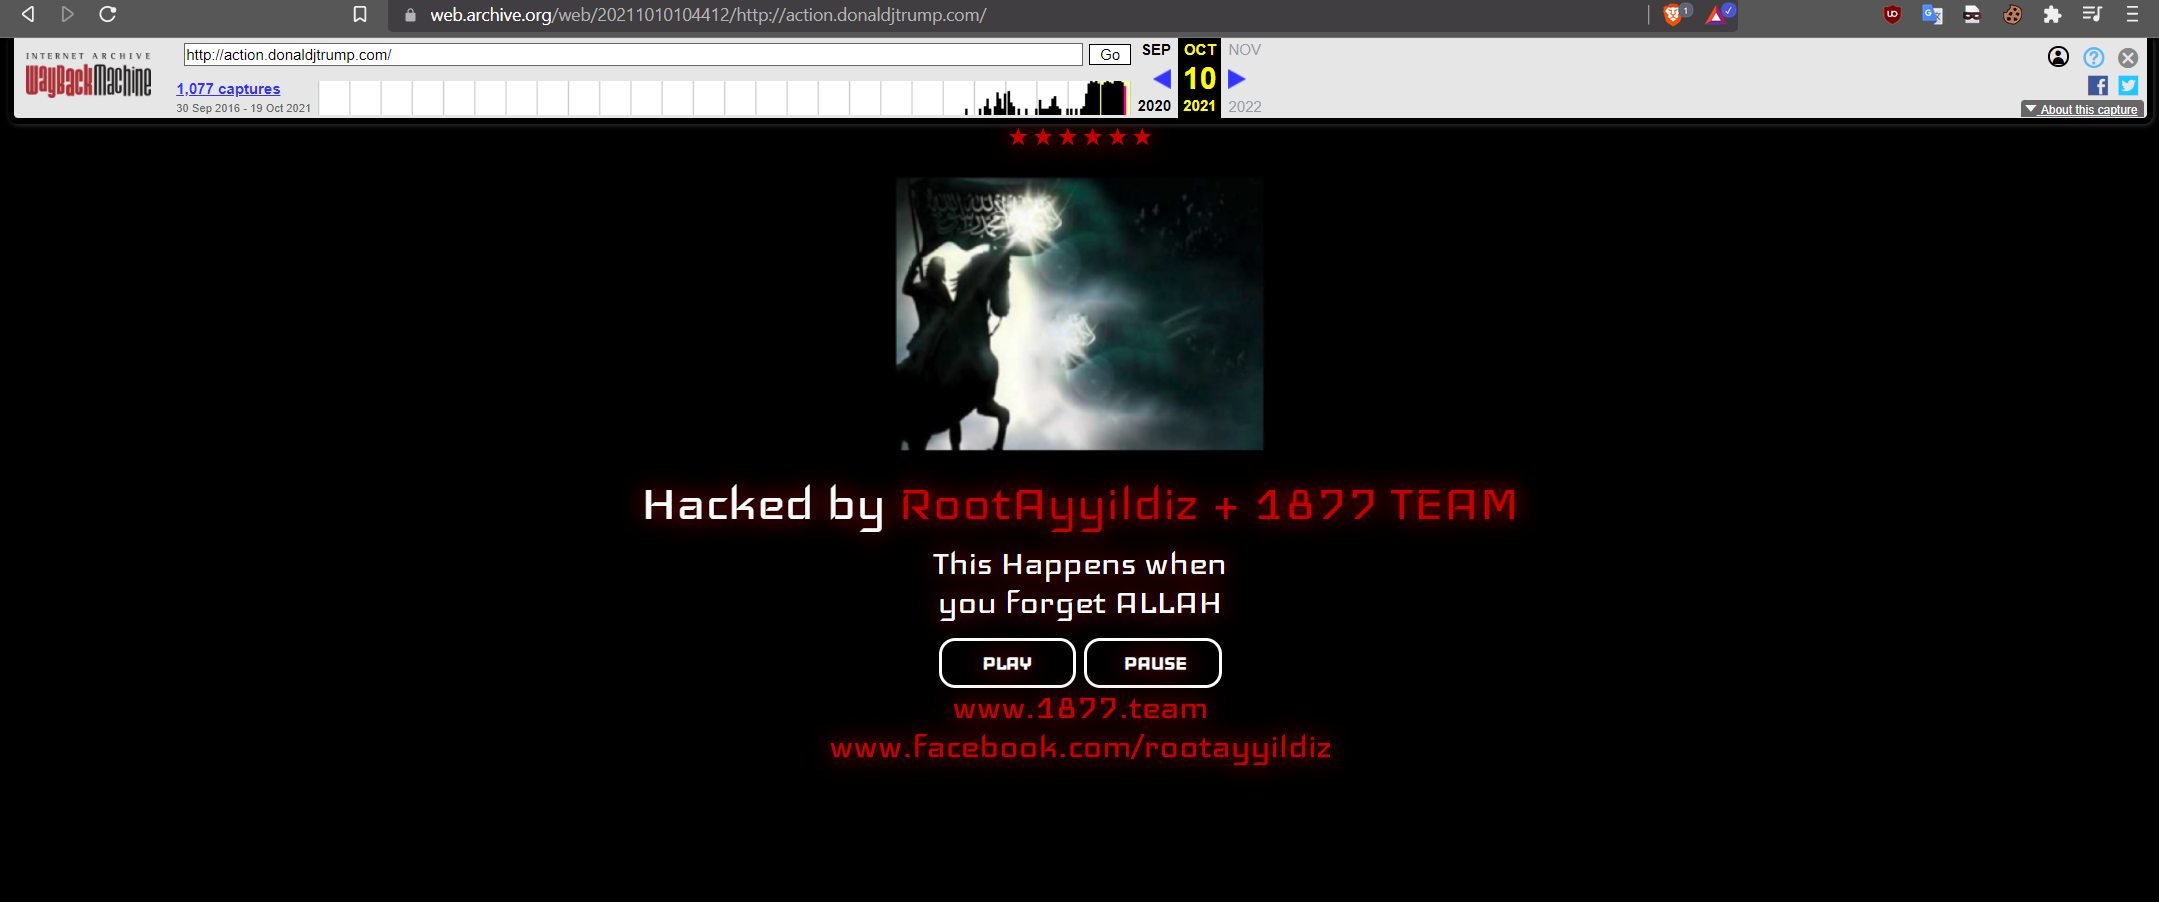 Türk hackerlar, Donald Trump'ın web sitesini hackledi.